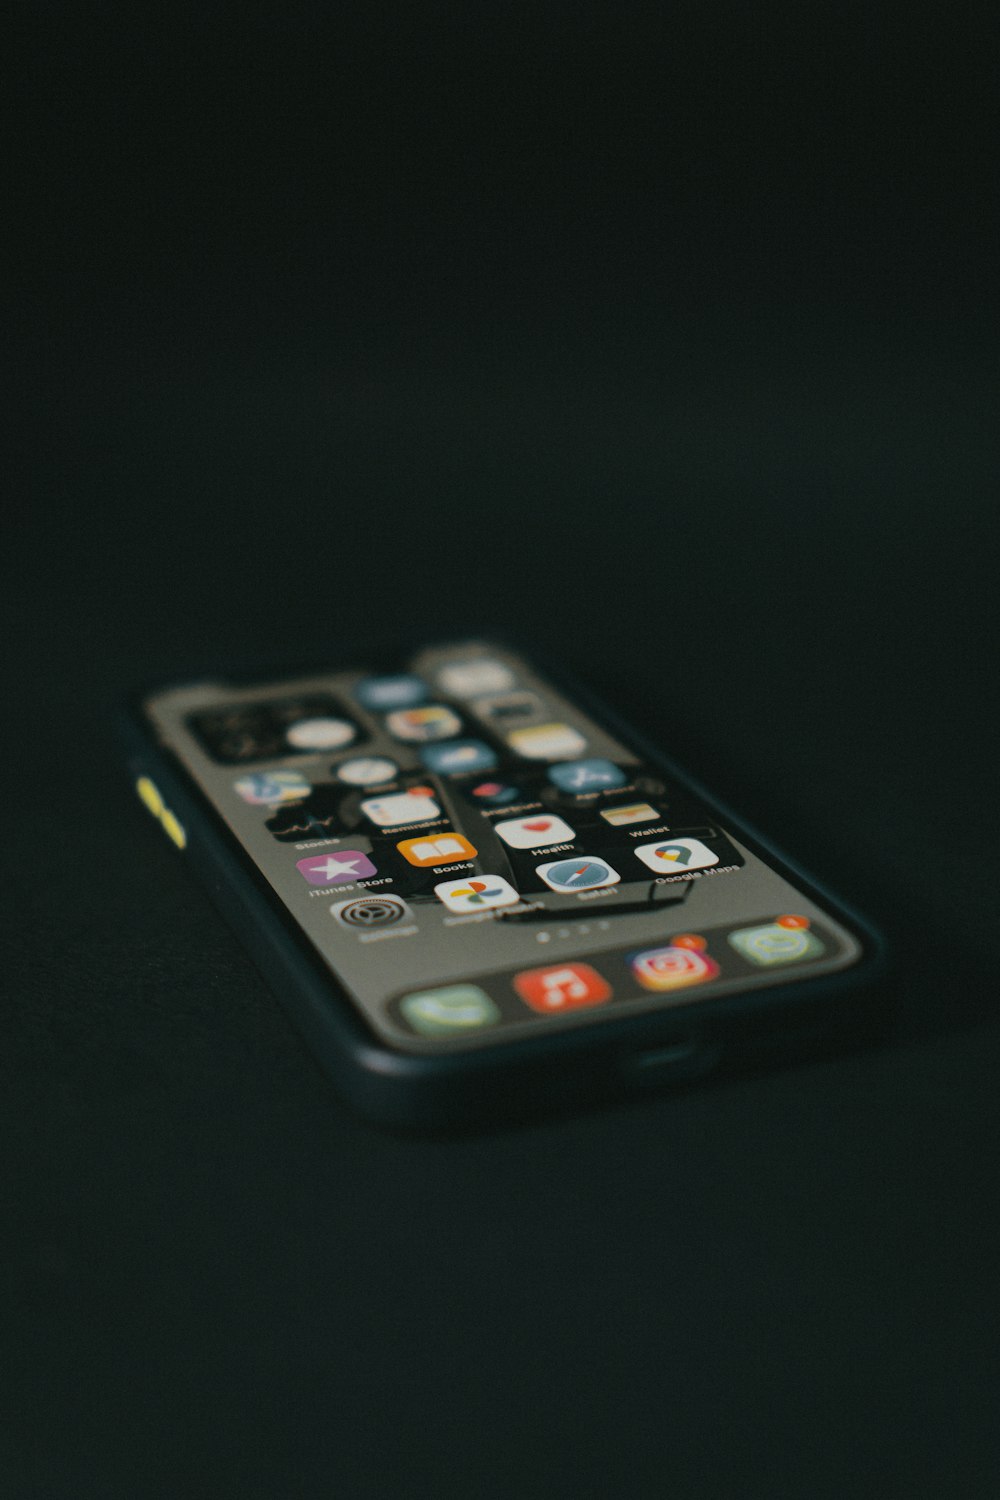 Schwarzes iPhone 4 auf schwarzer Oberfläche